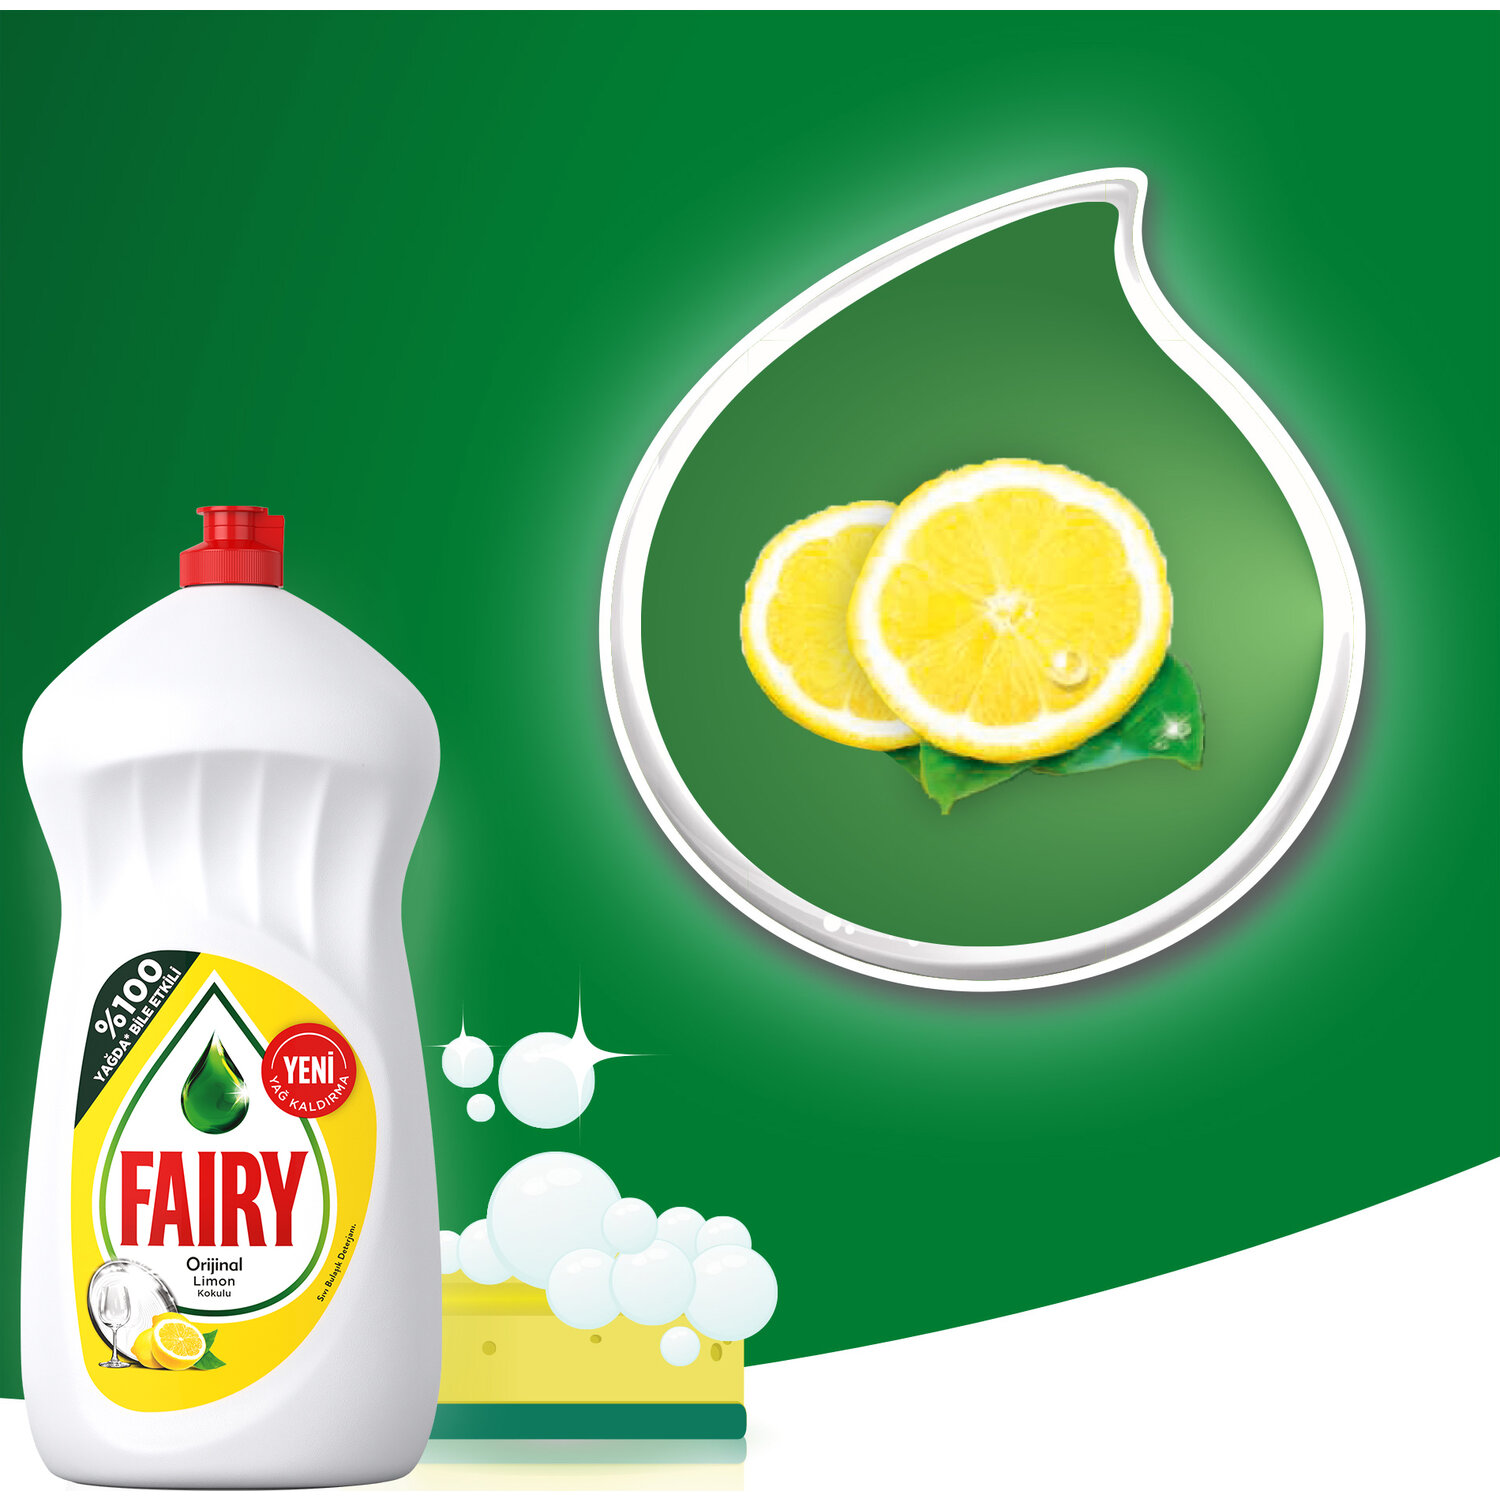 Fairy средство для мытья посуды лимон. Фейри сочный лимон 1.35. Средство для мытья посуды "Fairy" "сочный лимон", 1.35л. Фейри 1350 мл. Фейри сочный лимон 1350.